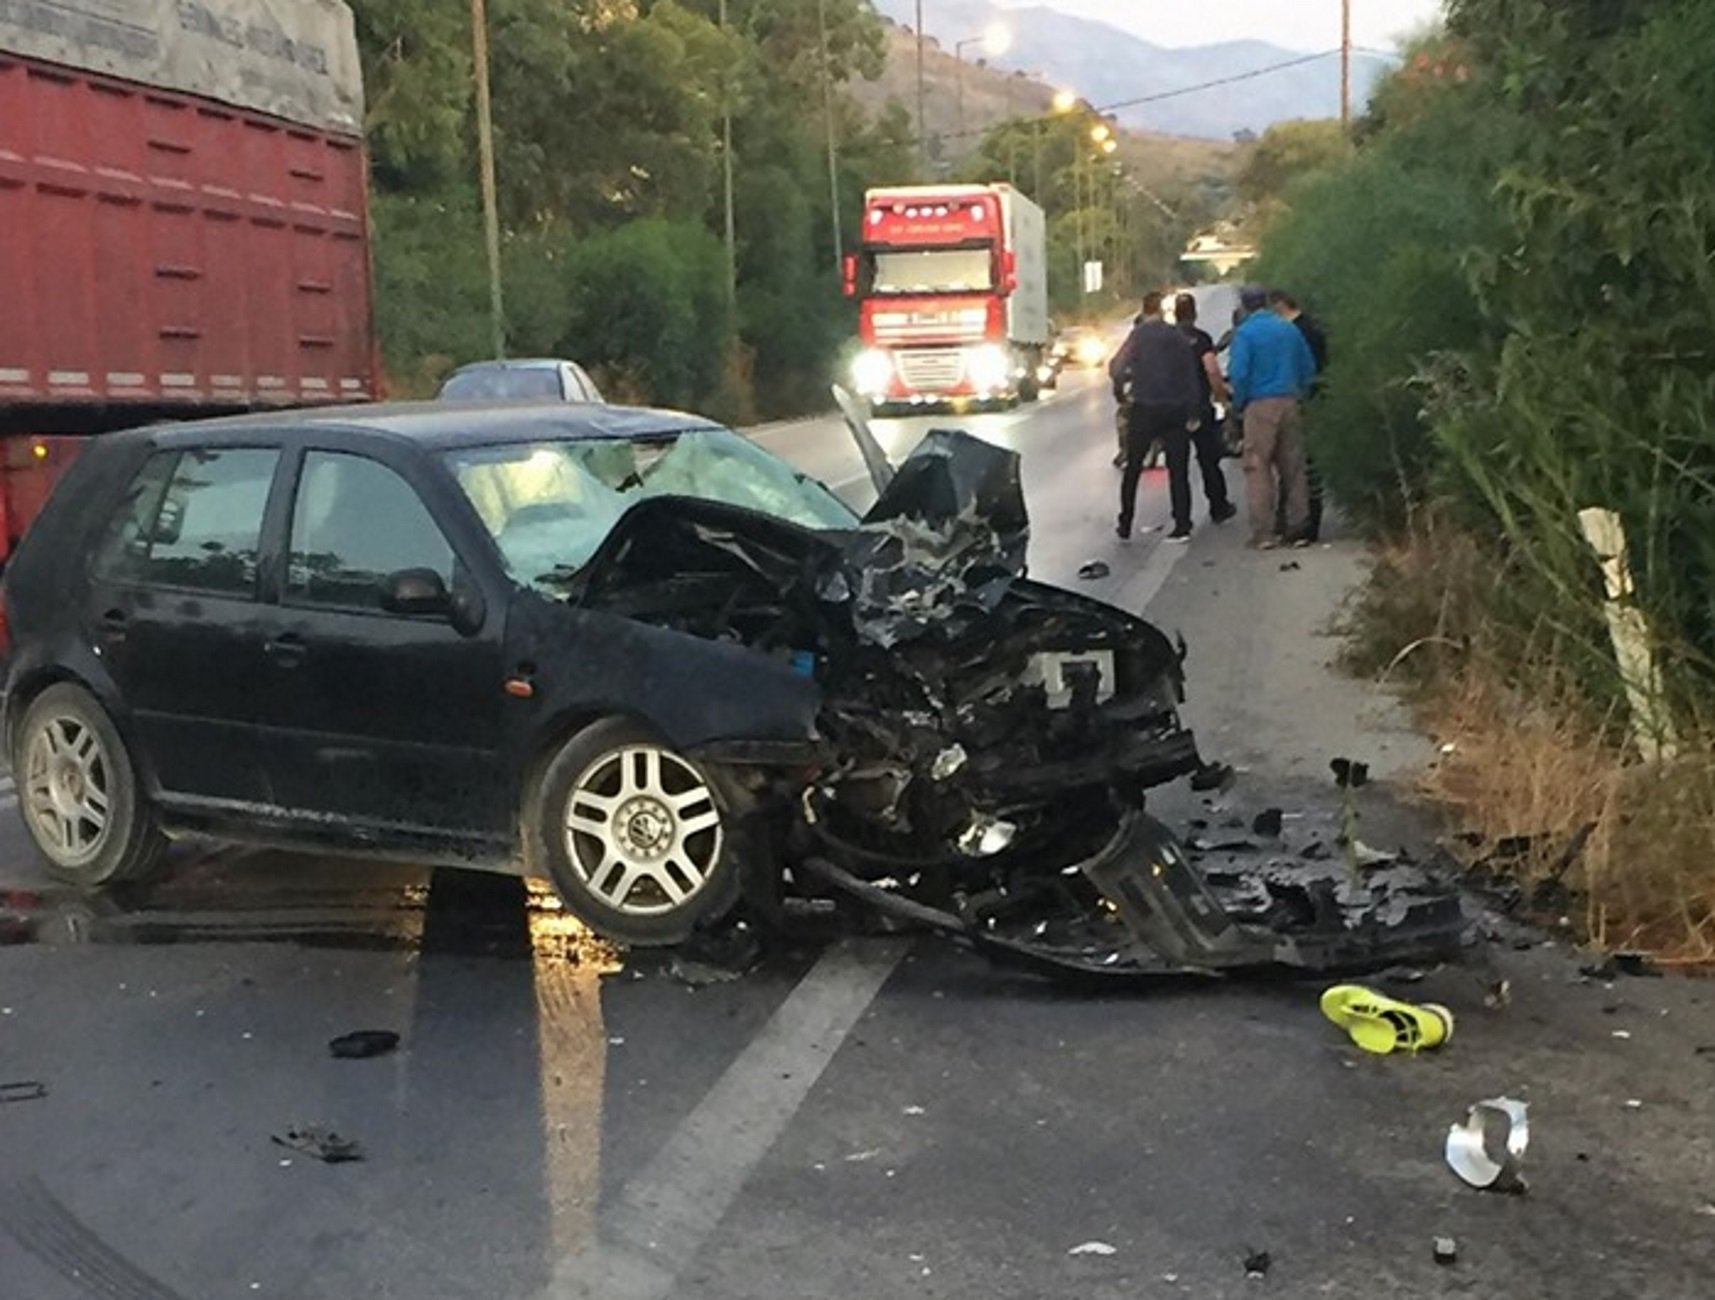 Μετωπική θανάτου για οδηγό μηχανής – Διαλύθηκε το αυτοκίνητο που τον σκότωσε ακαριαία [pics]